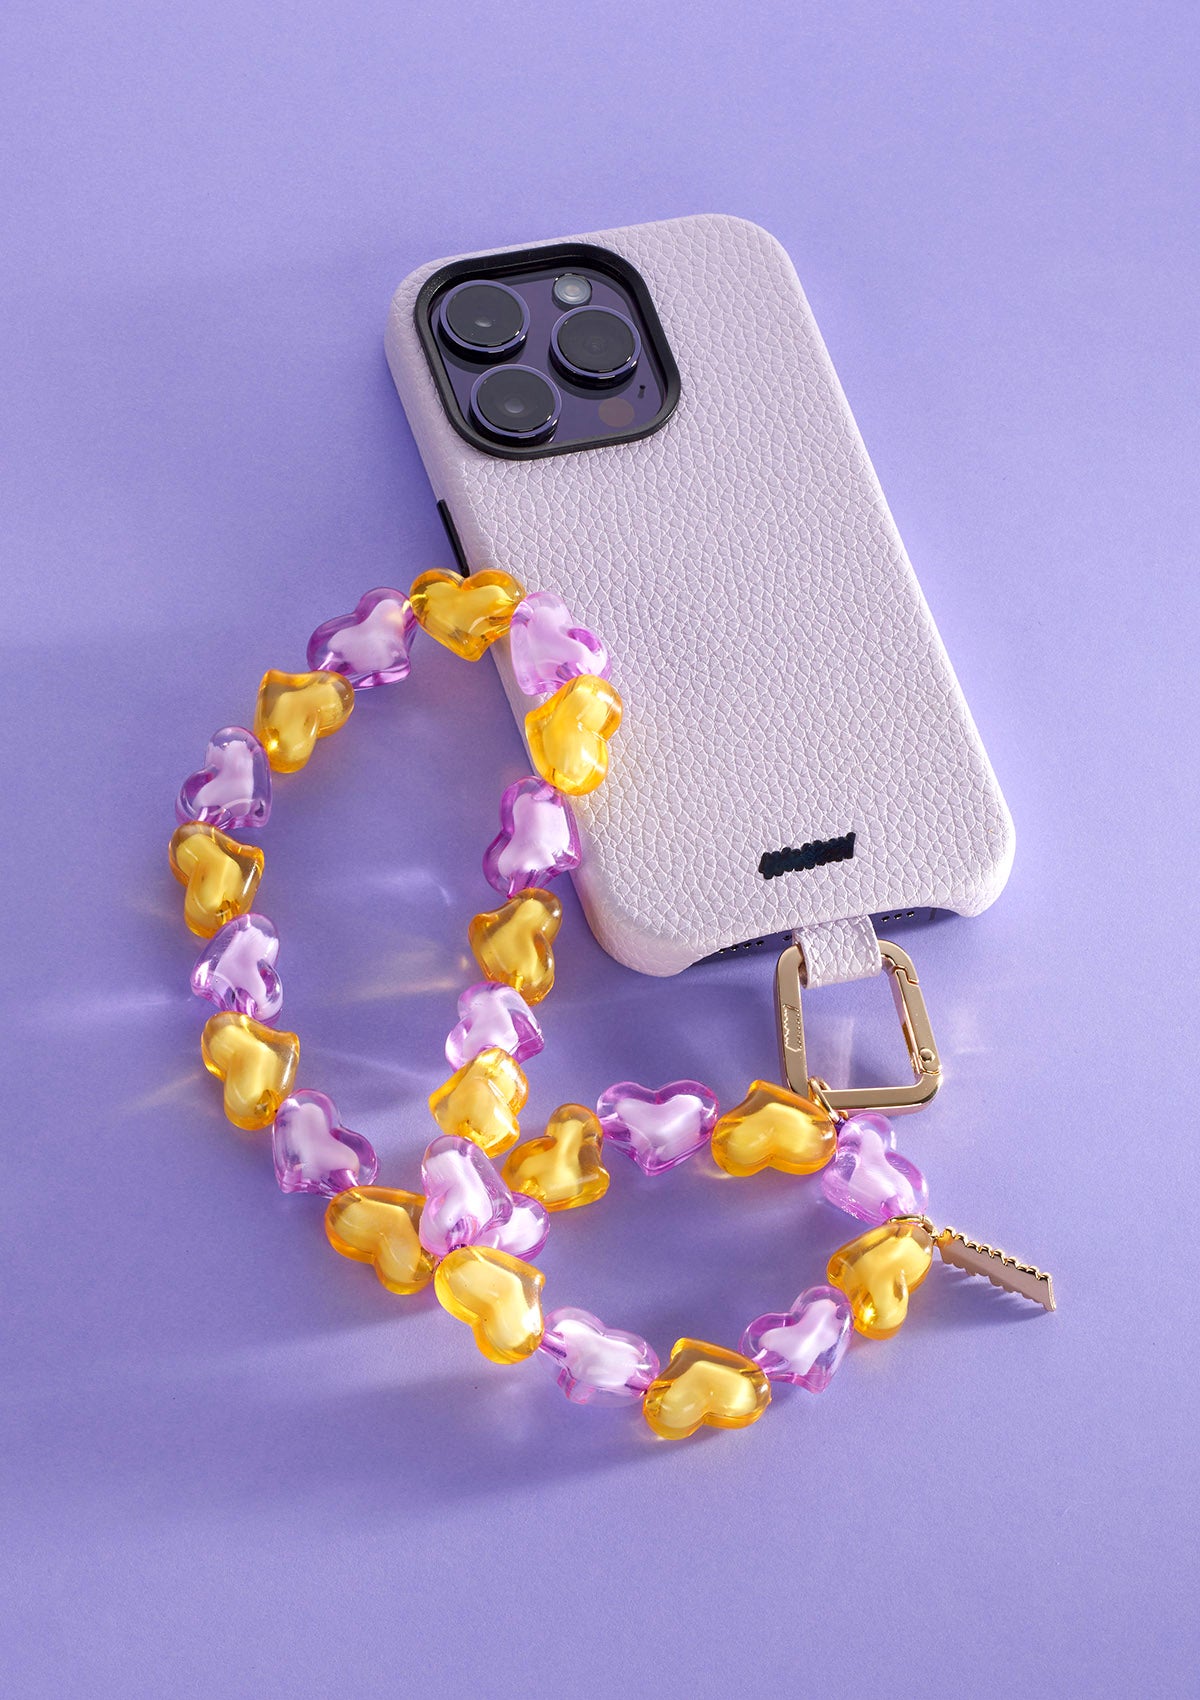 Cover iPhone 14 Pro Max Palette Untags in colore lilla con Phone Strap Personalizzabile e Strap Glossy Hearts